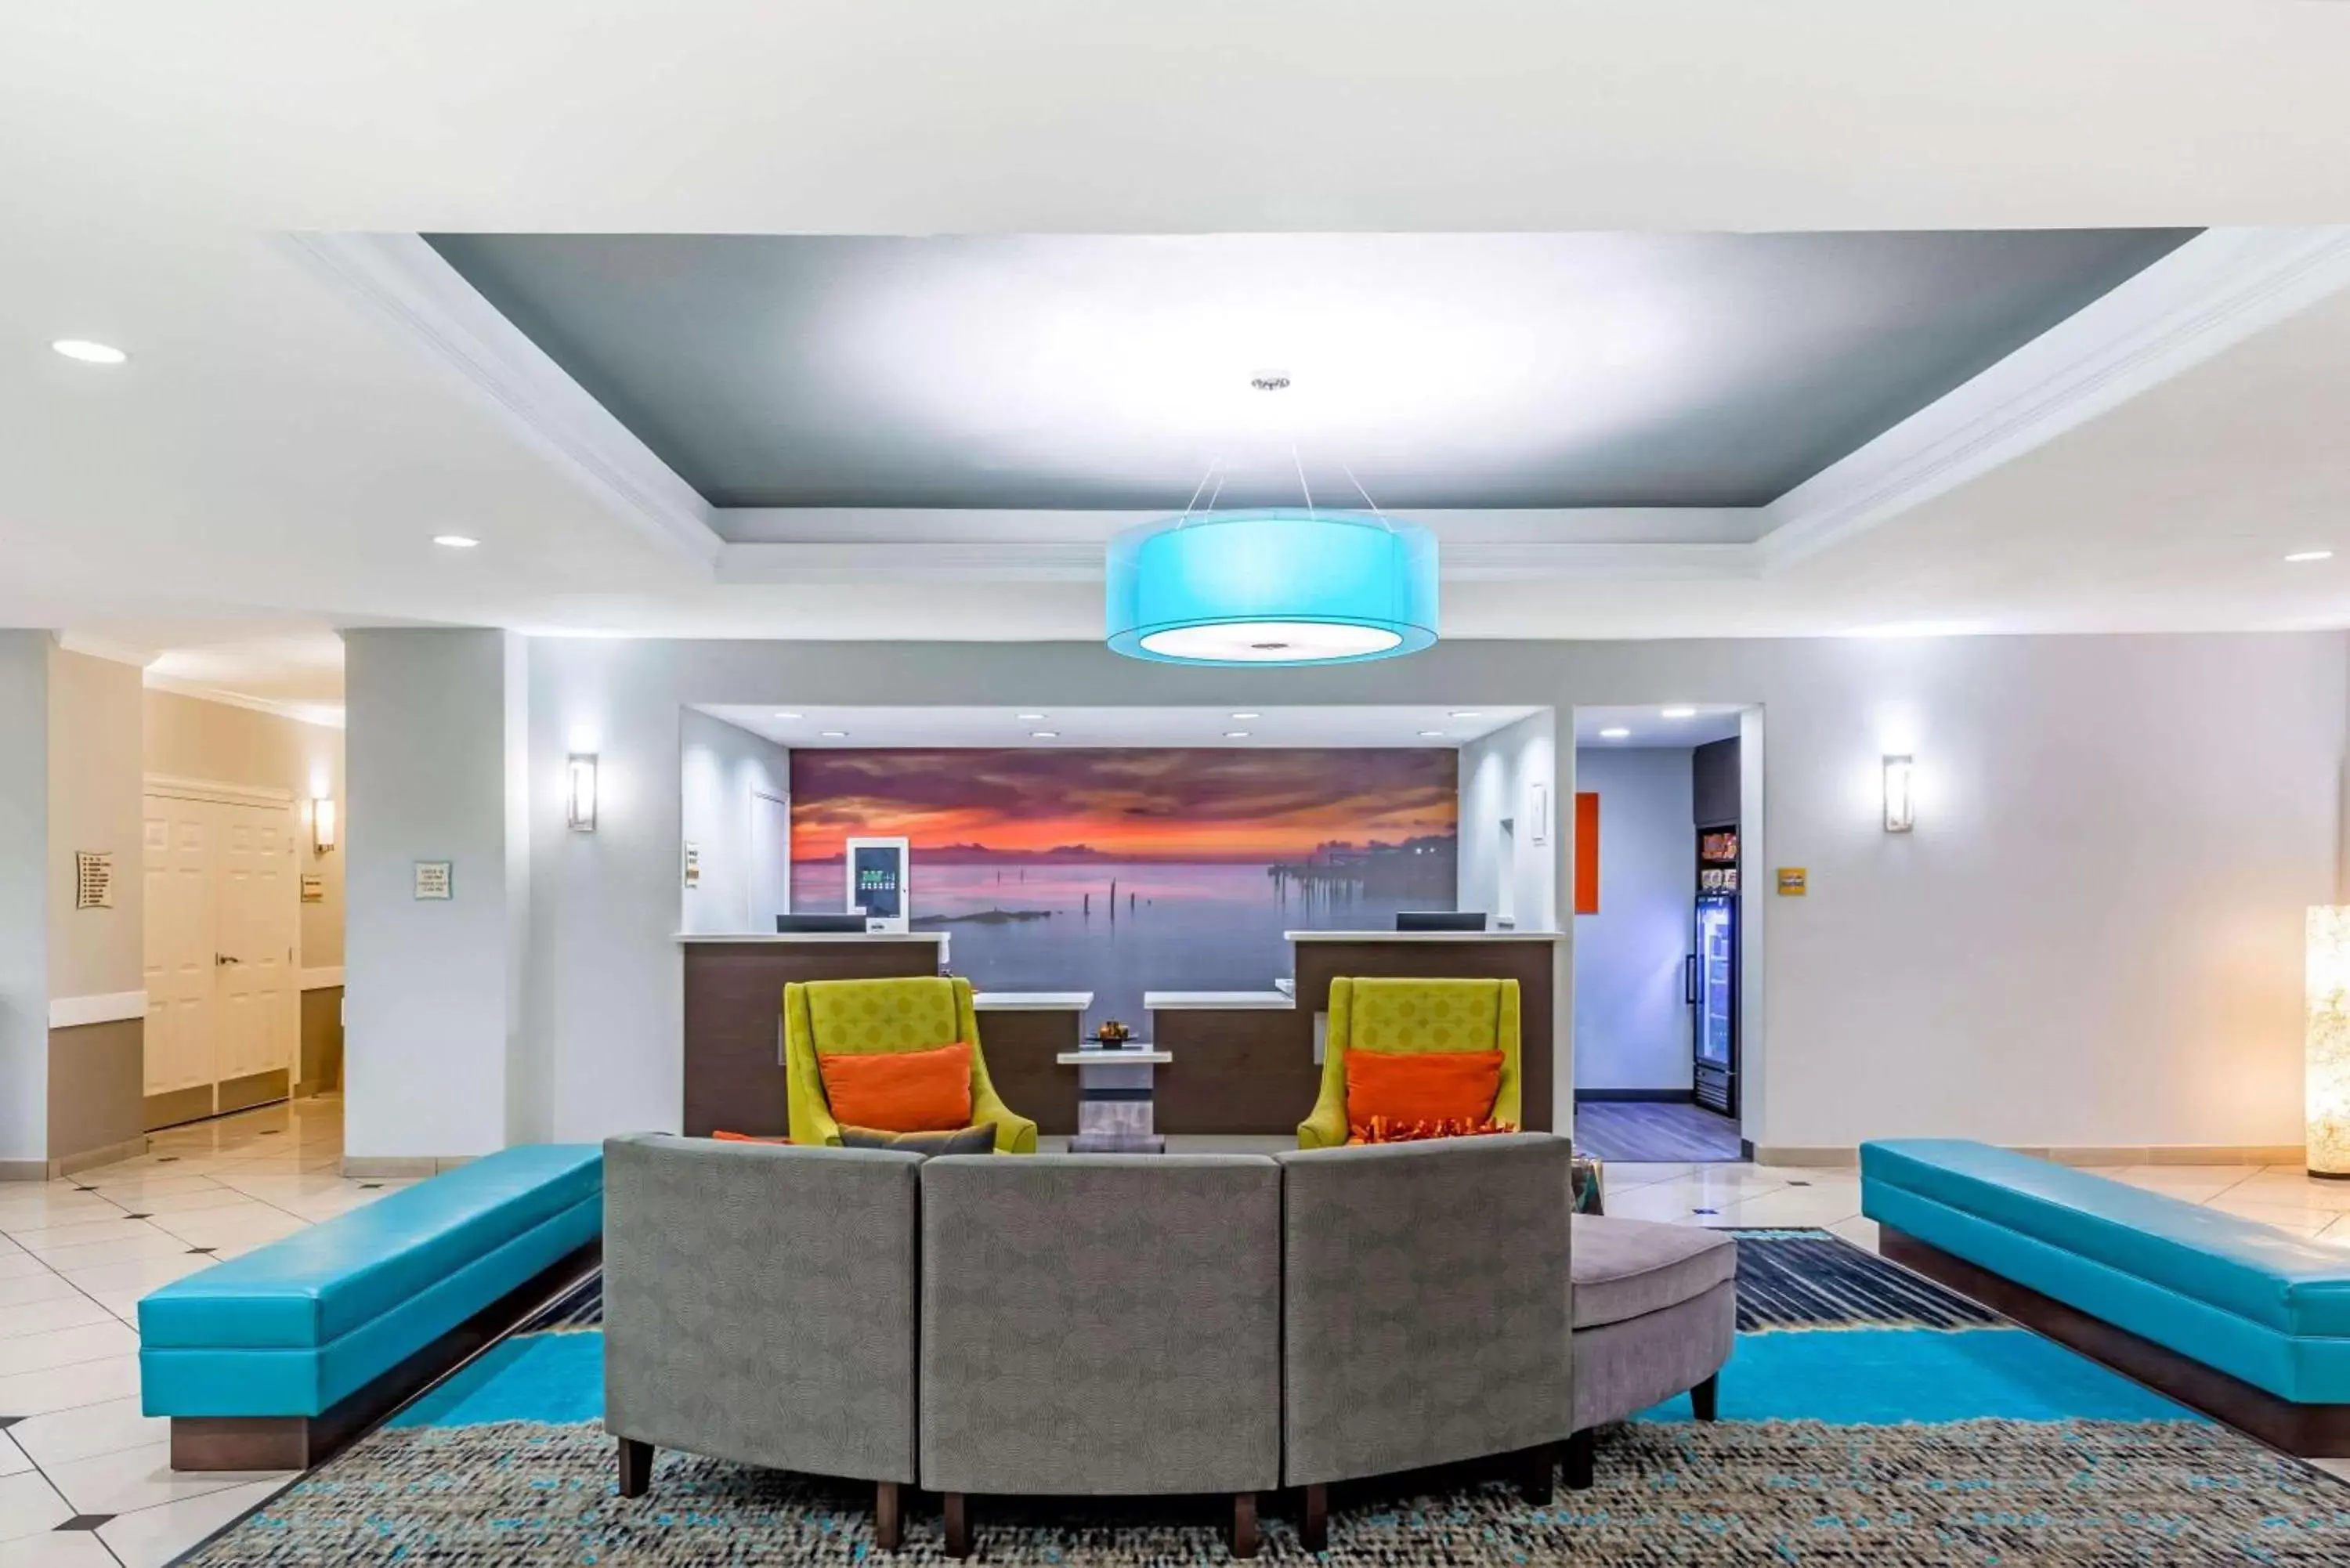 Lobby or reception in La Quinta by Wyndham Orange